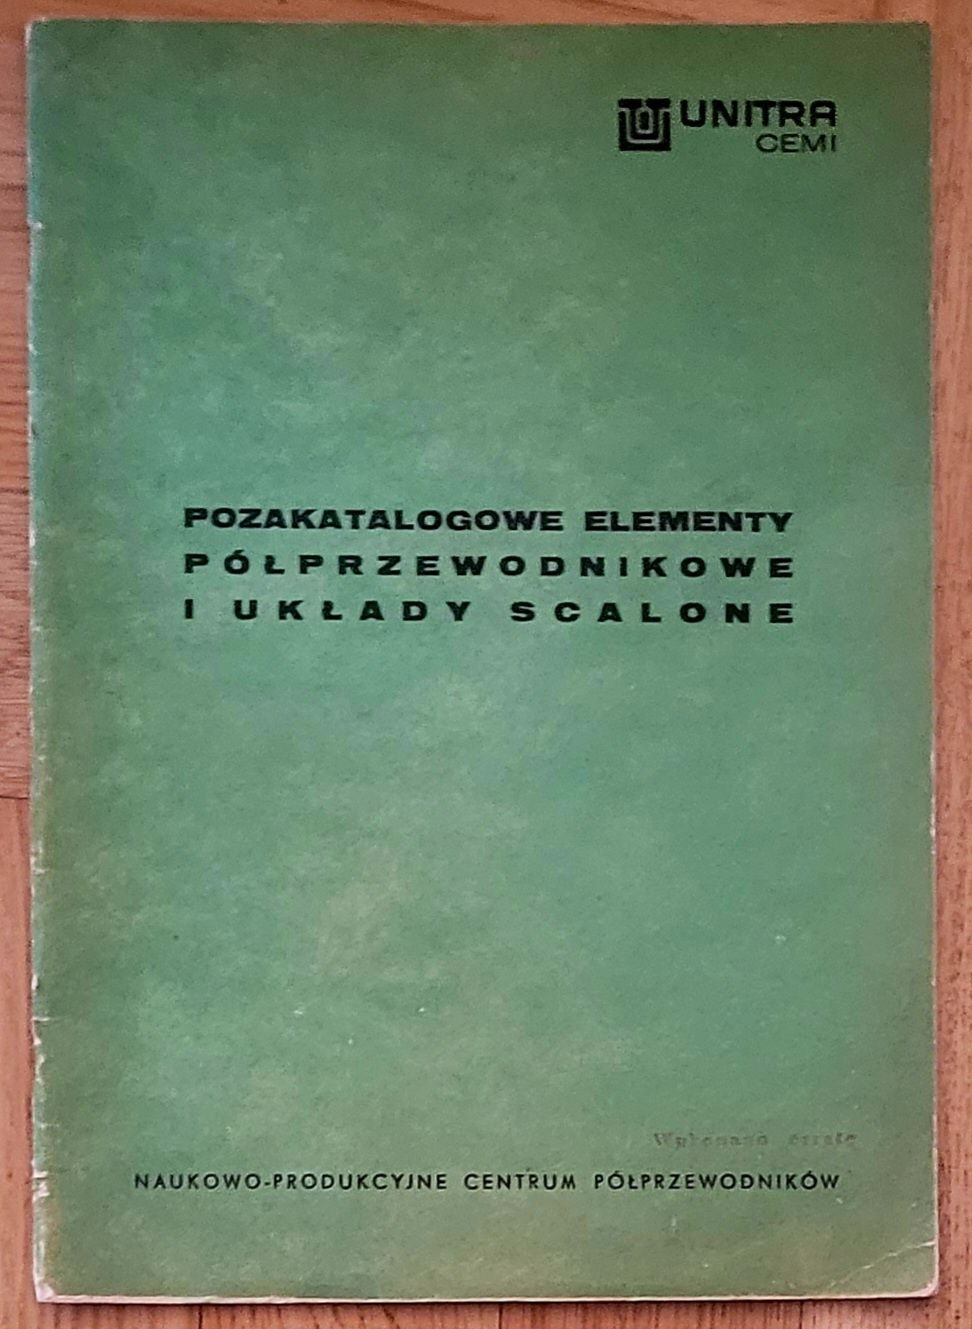 Stare katalogi elem. półprzewodnikowych UNITRA CEMI l.70-80-te XX w!